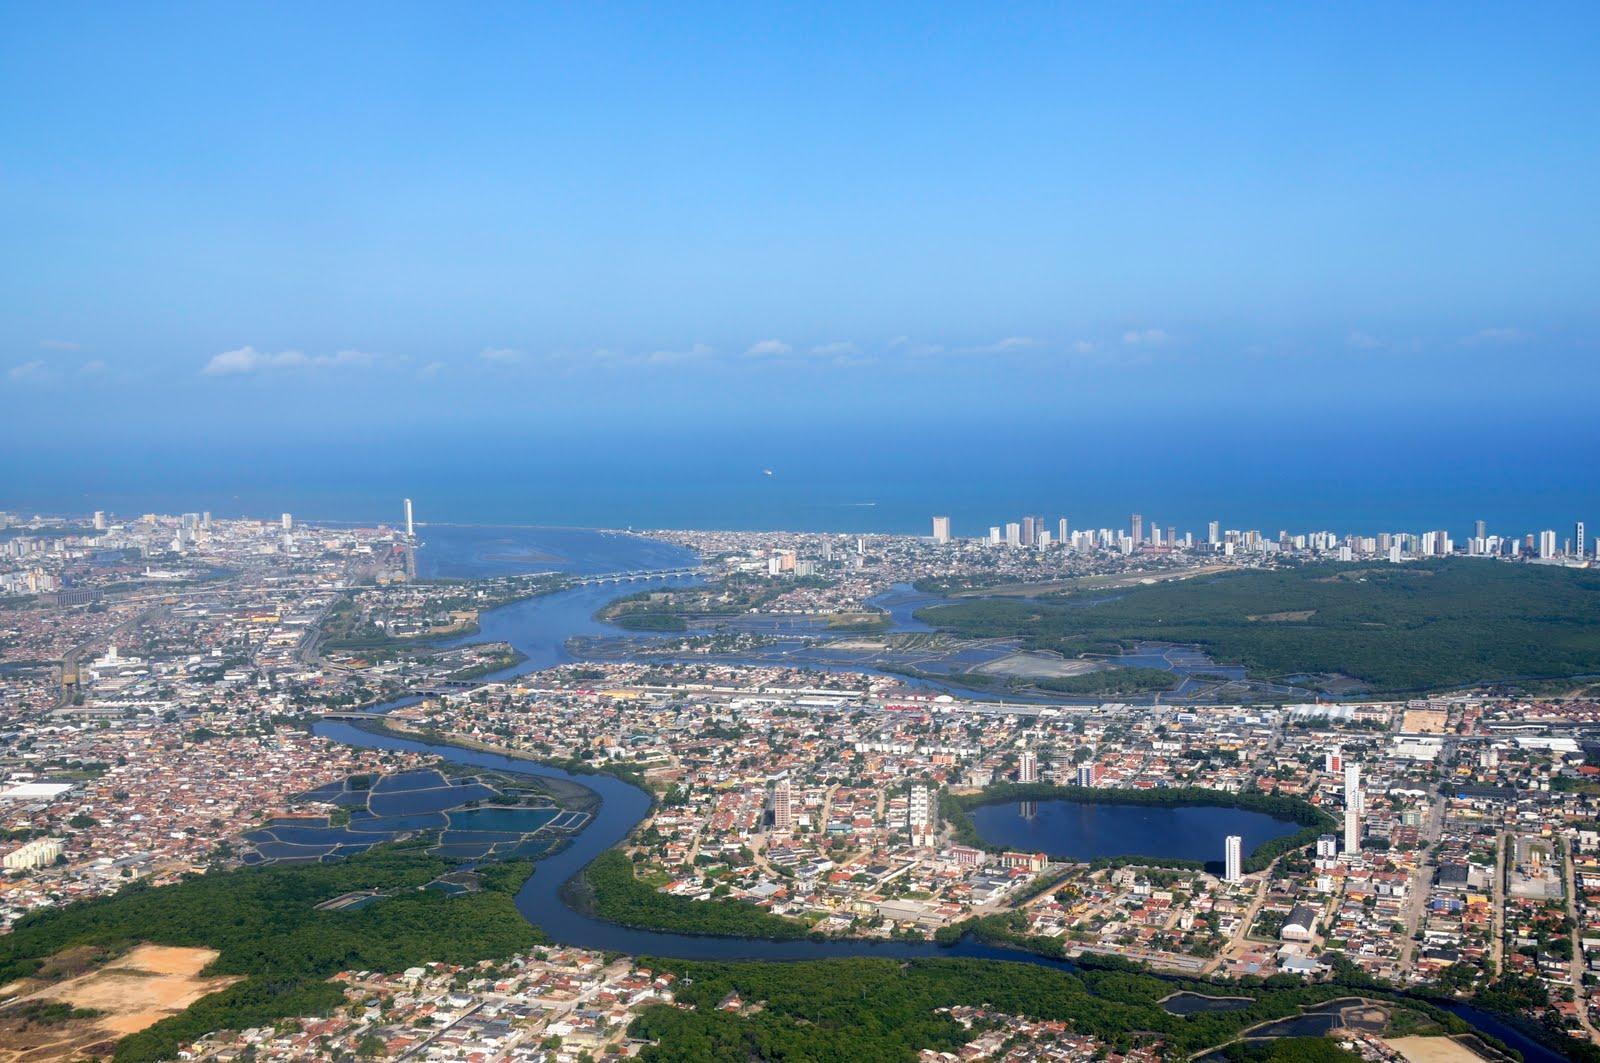 Recife Brazil (id: 161561)